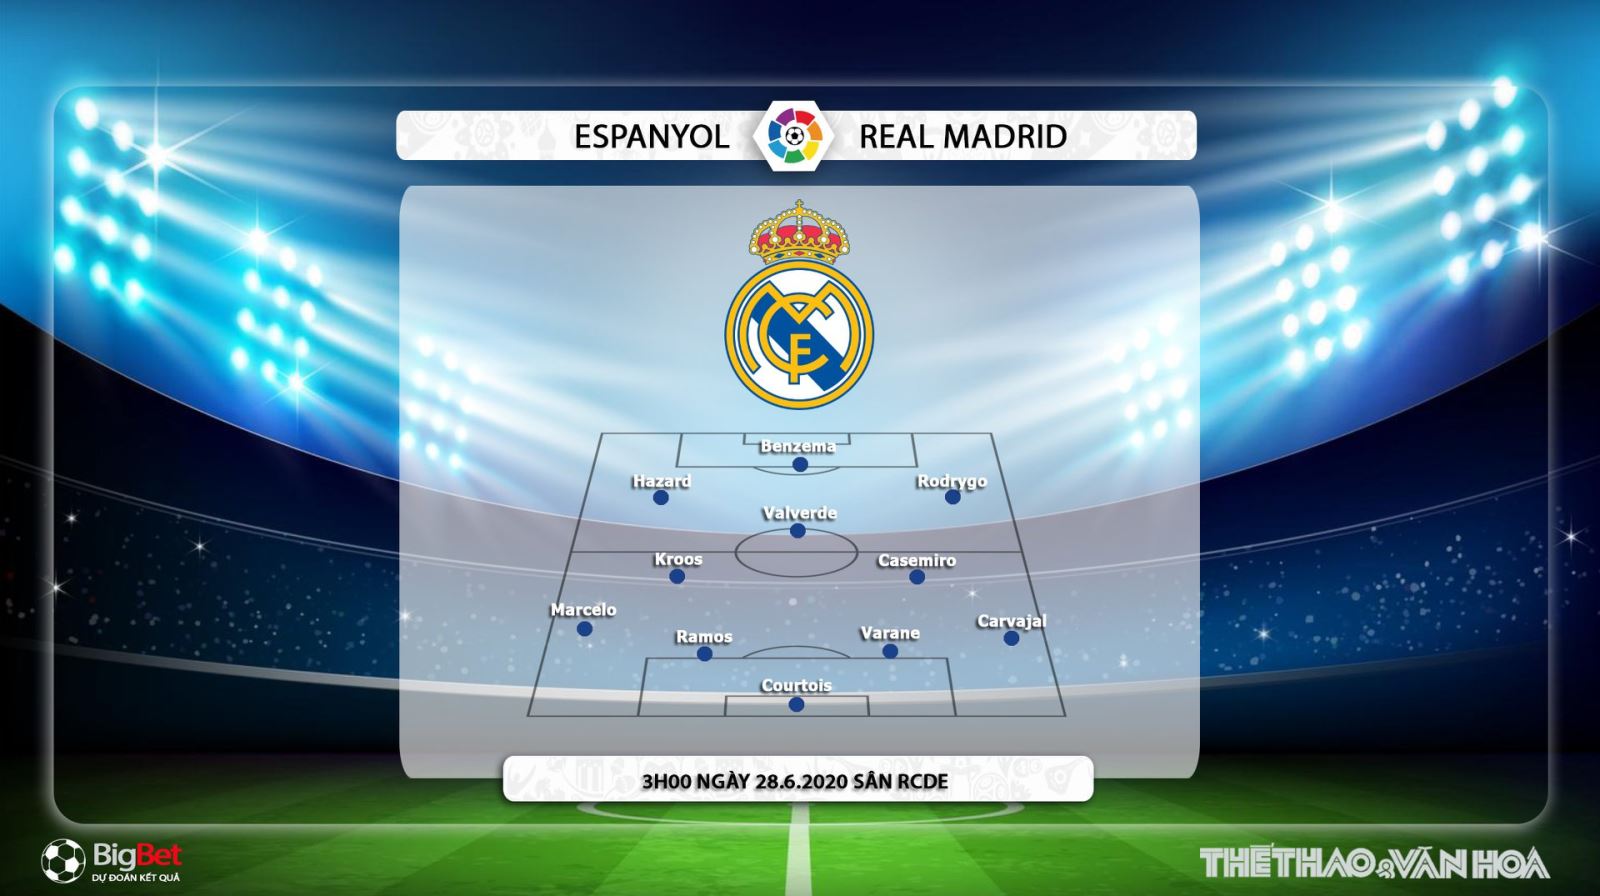 Espanyol vs Real Madrid, Real Madrid, Espanyol, trực tiếp bóng đá, nhận định bóng đá, kèo bóng đá, lịch thi đấu bóng đá, La Liga